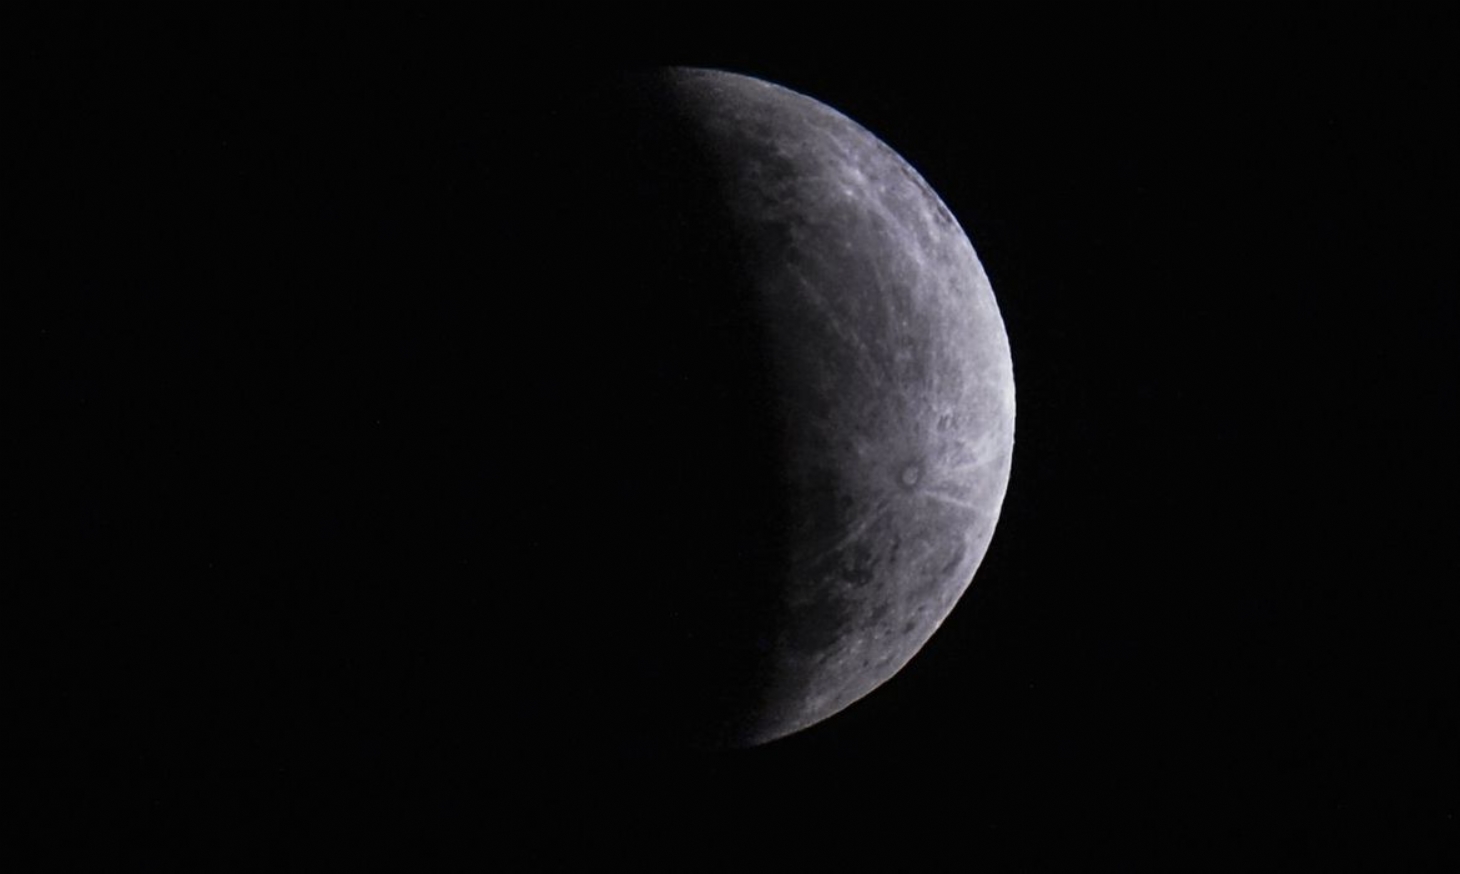 Eclipse parcial da Lua poderá ser observado nesta madrugada | Jornal da Orla